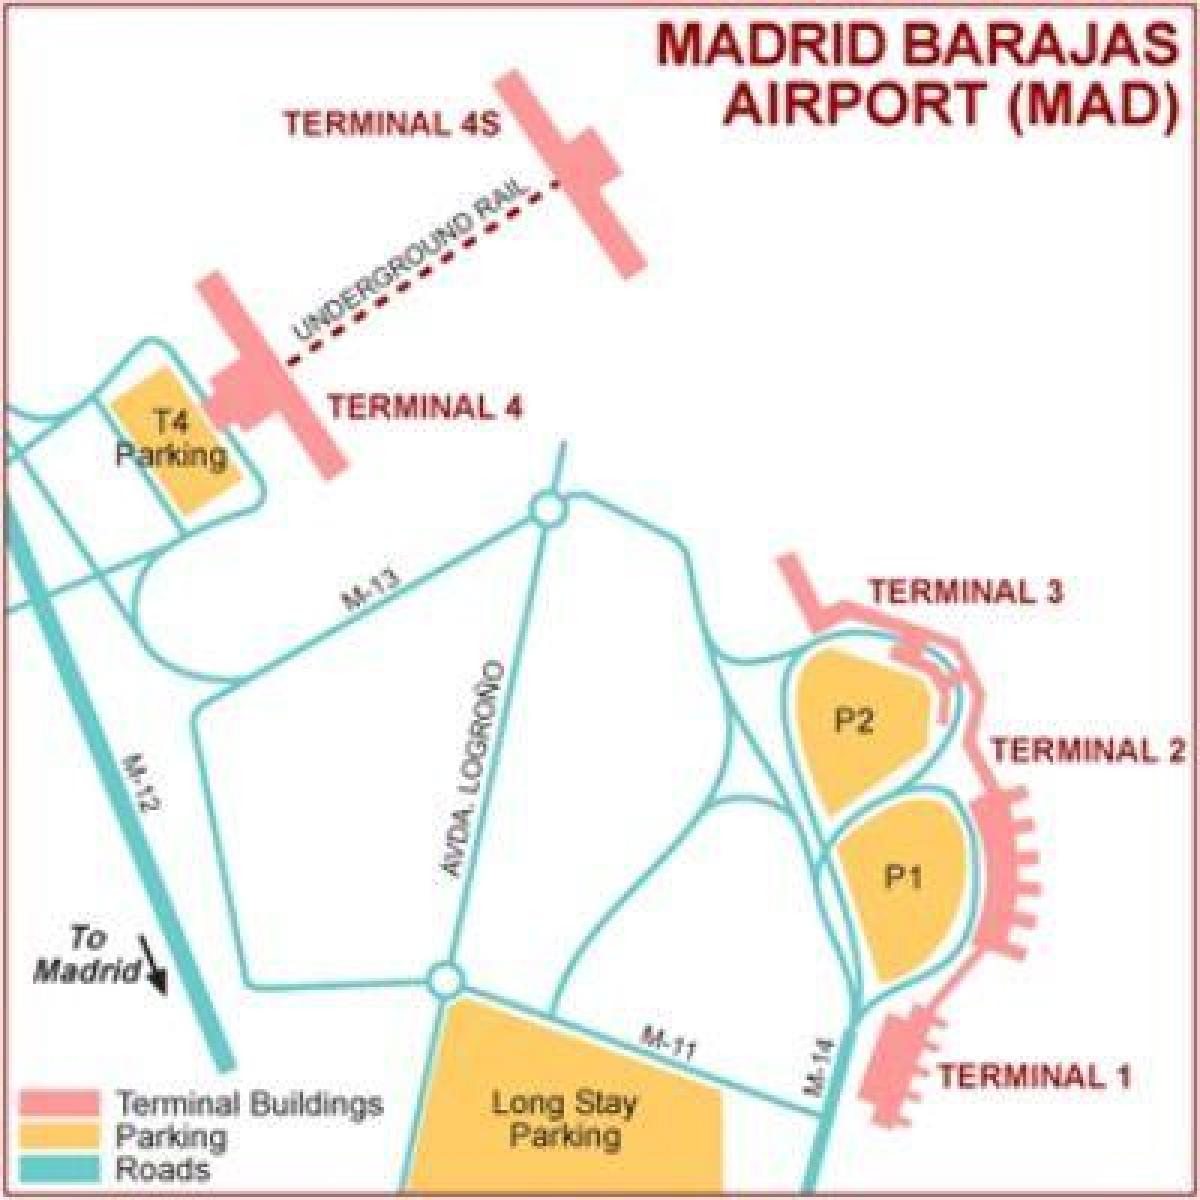 Madrid havaalanı terminal göster